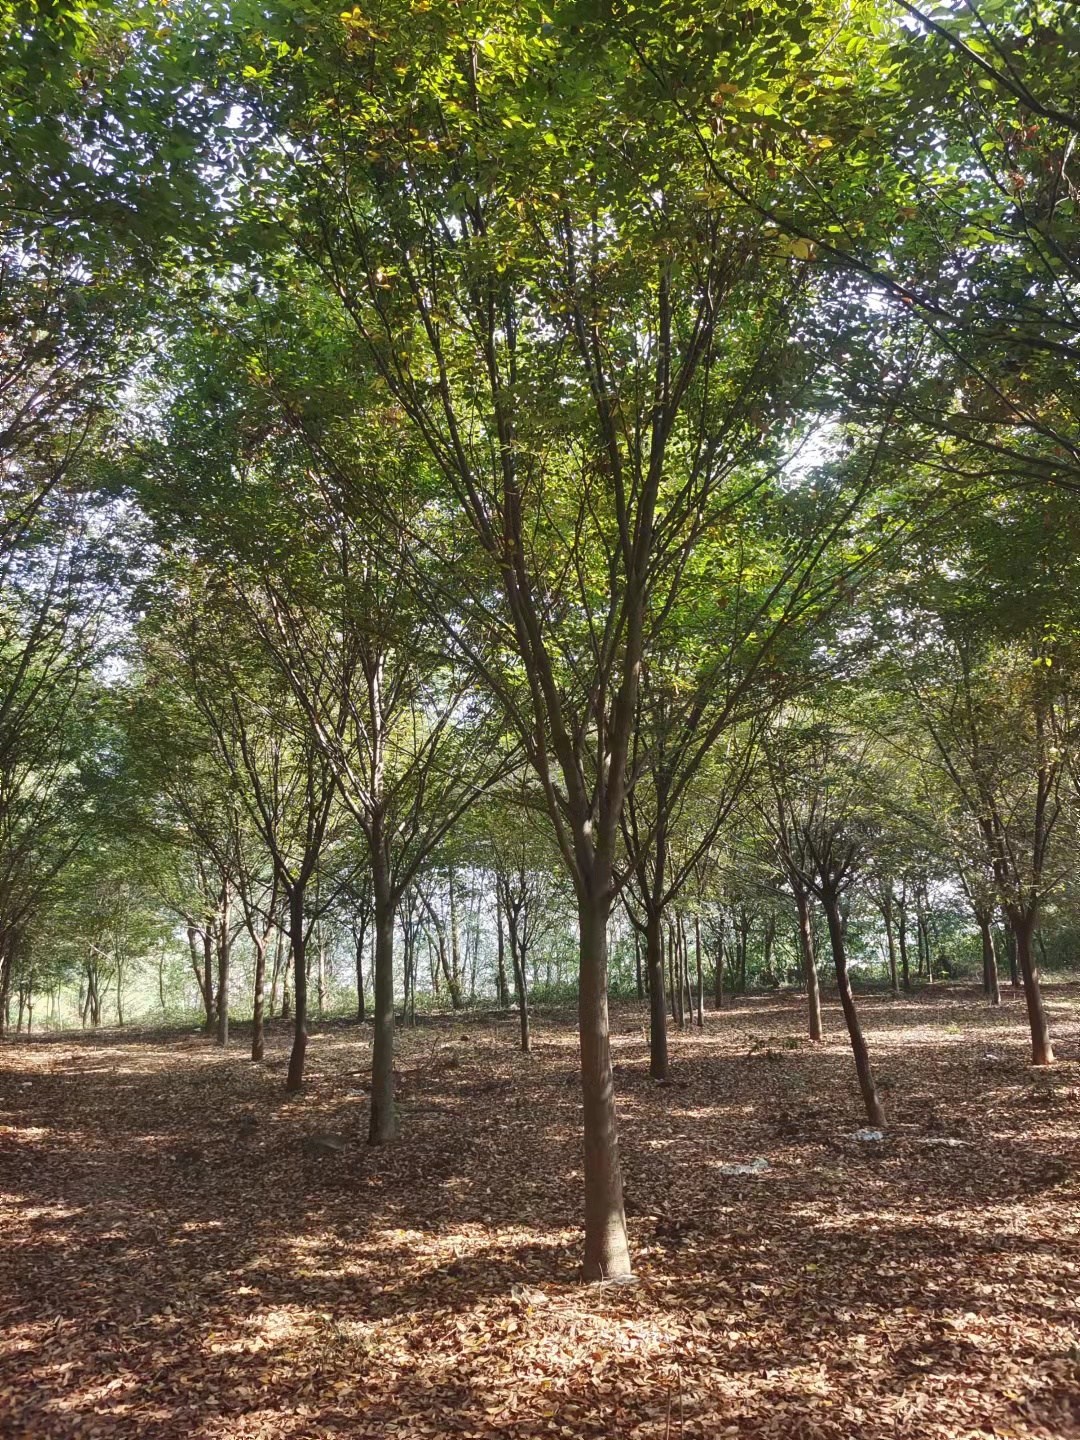 苗圃供应 苦楝树 环境优越 苗木资源雄厚